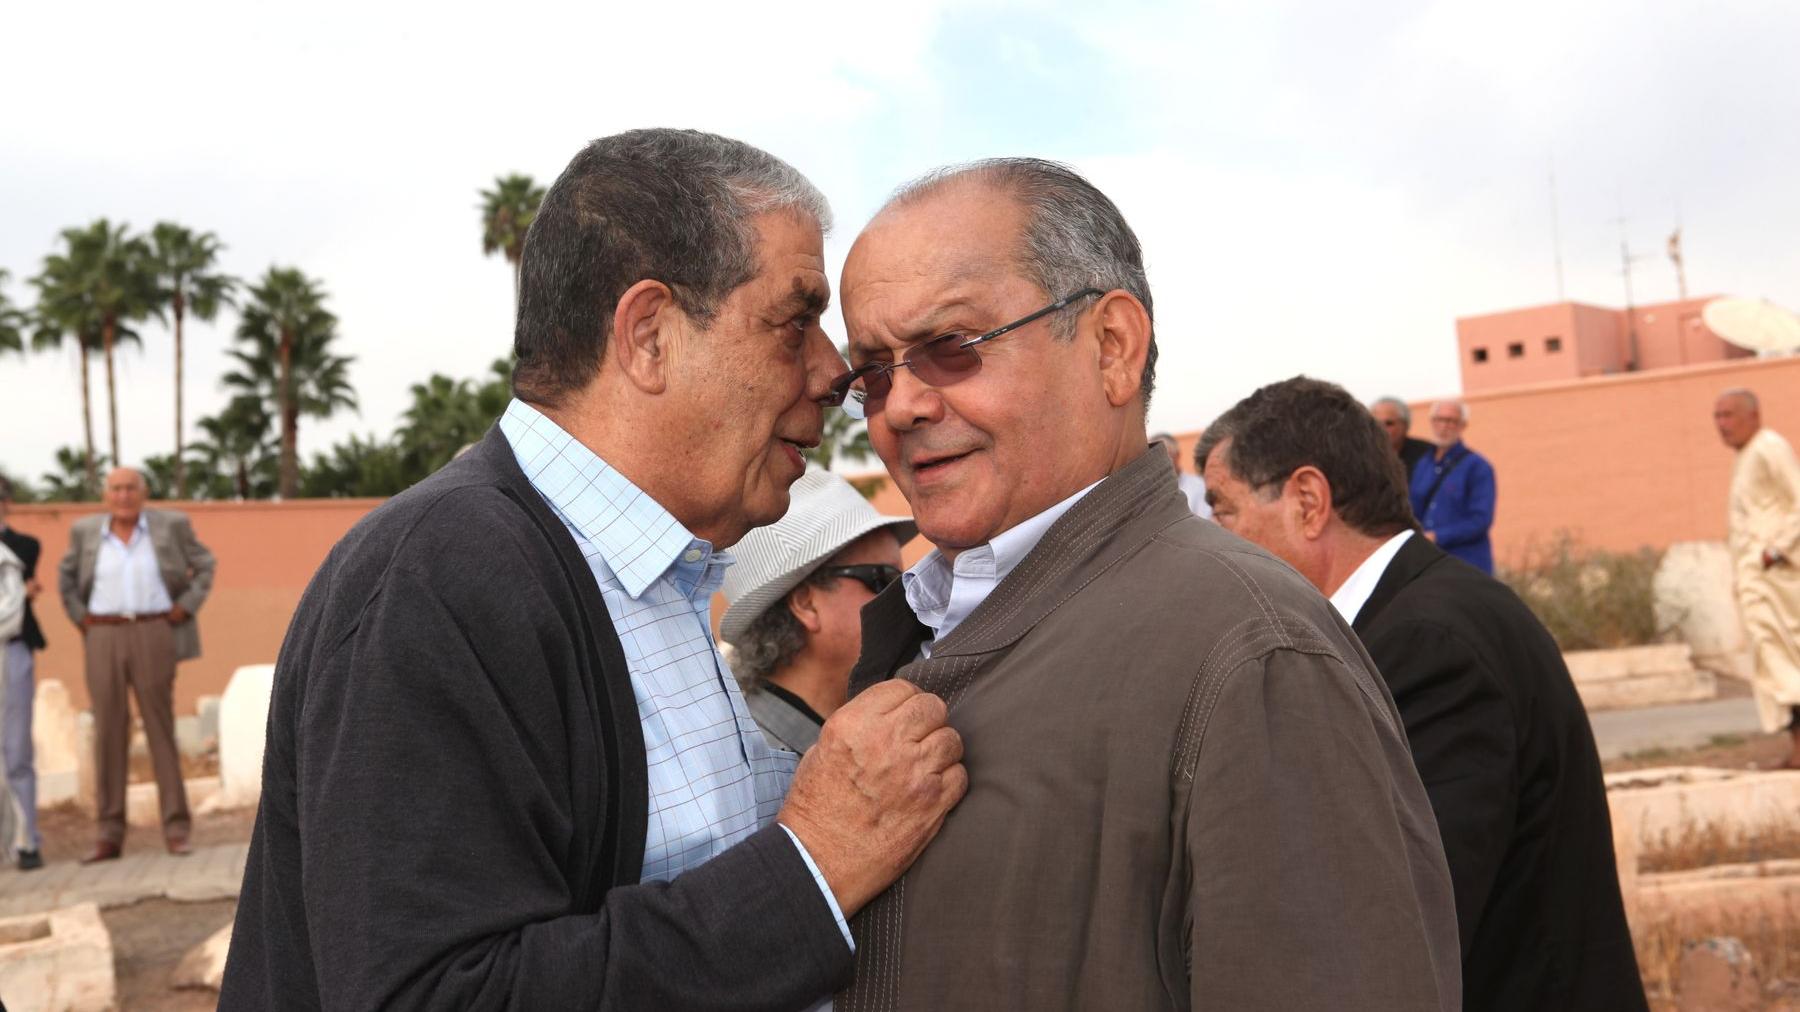 عمدة مراكش السابق عمر الجزولي في حديث خافت إلى الوزير السابق عبد الرحمان السعيدي
